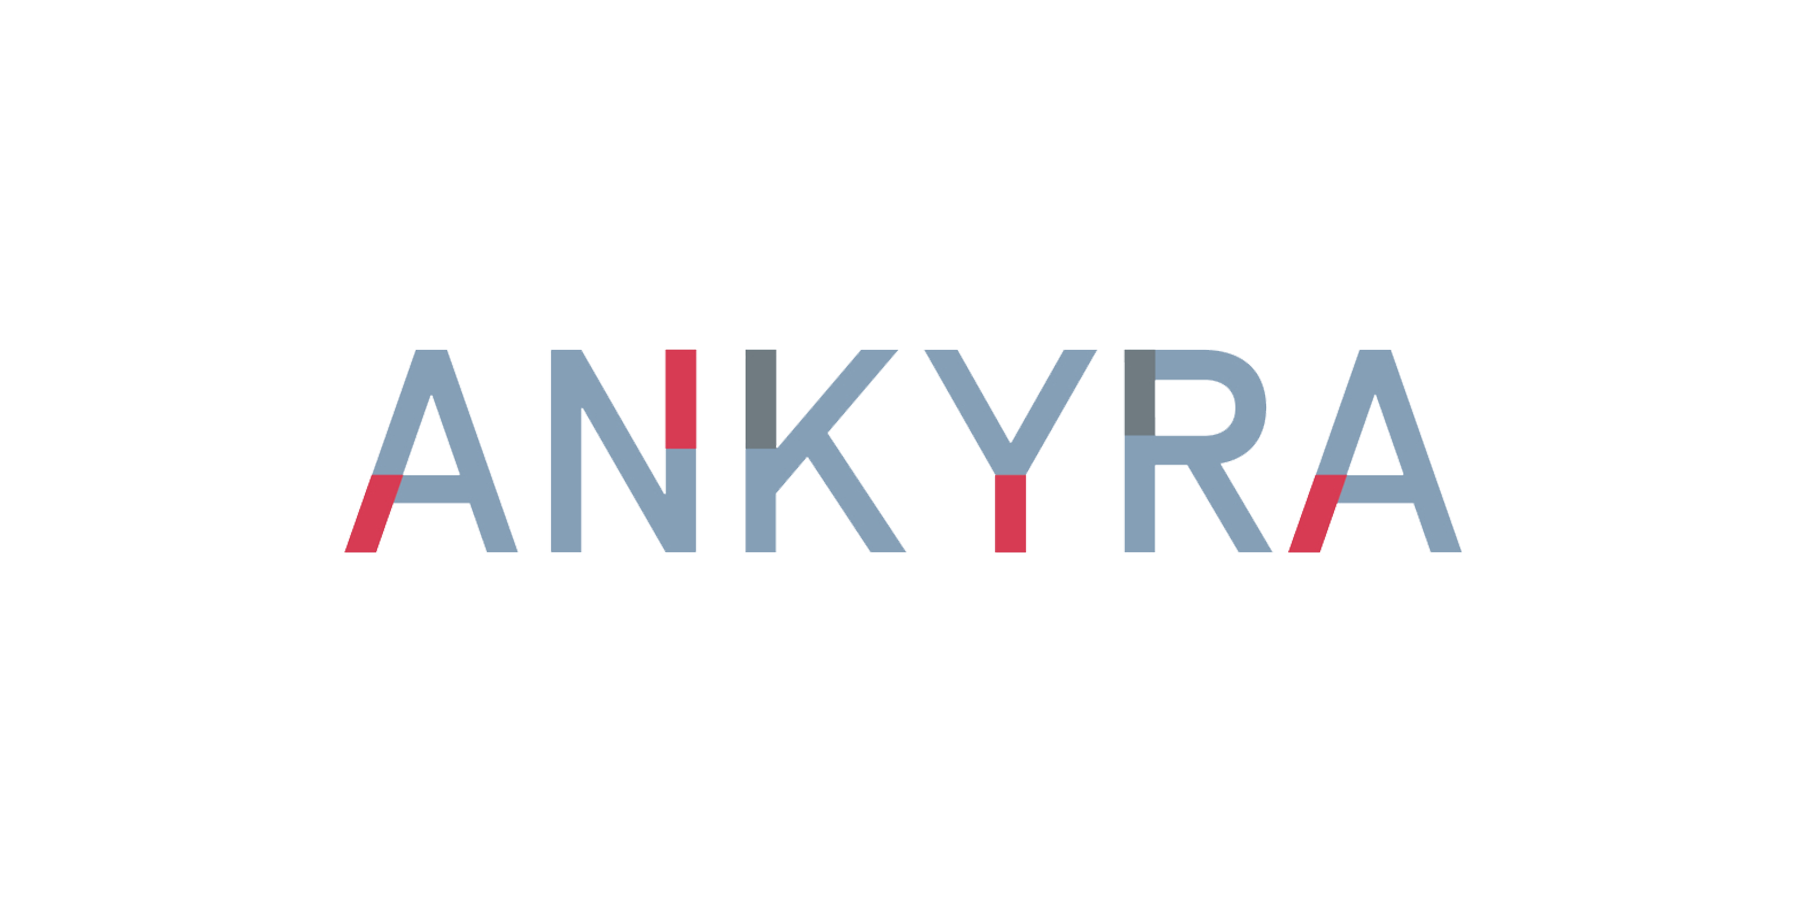 Ankyra